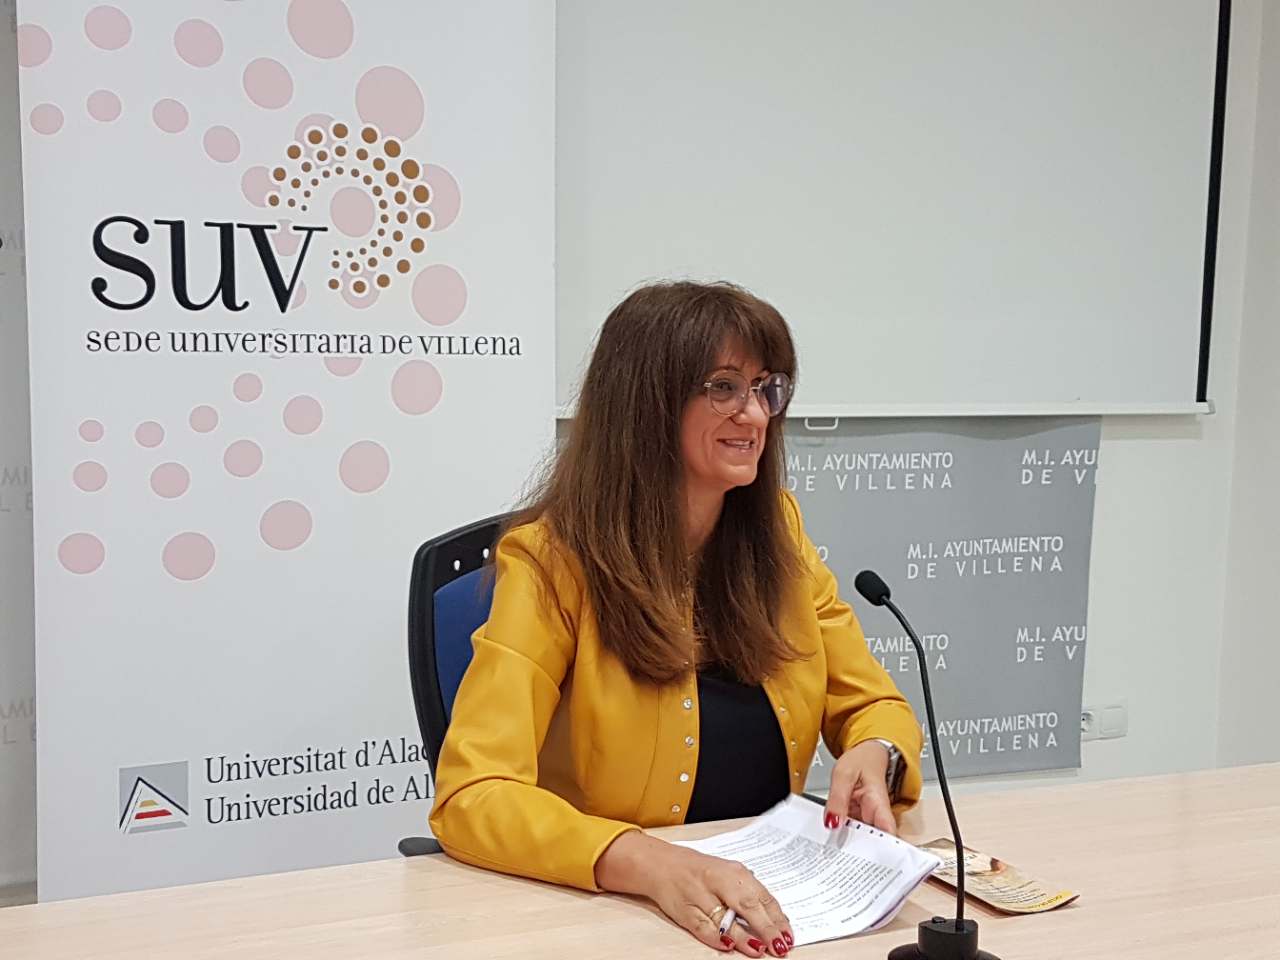 La Sede Universitaria organiza en Villena una veintena de actividades para los próximos meses